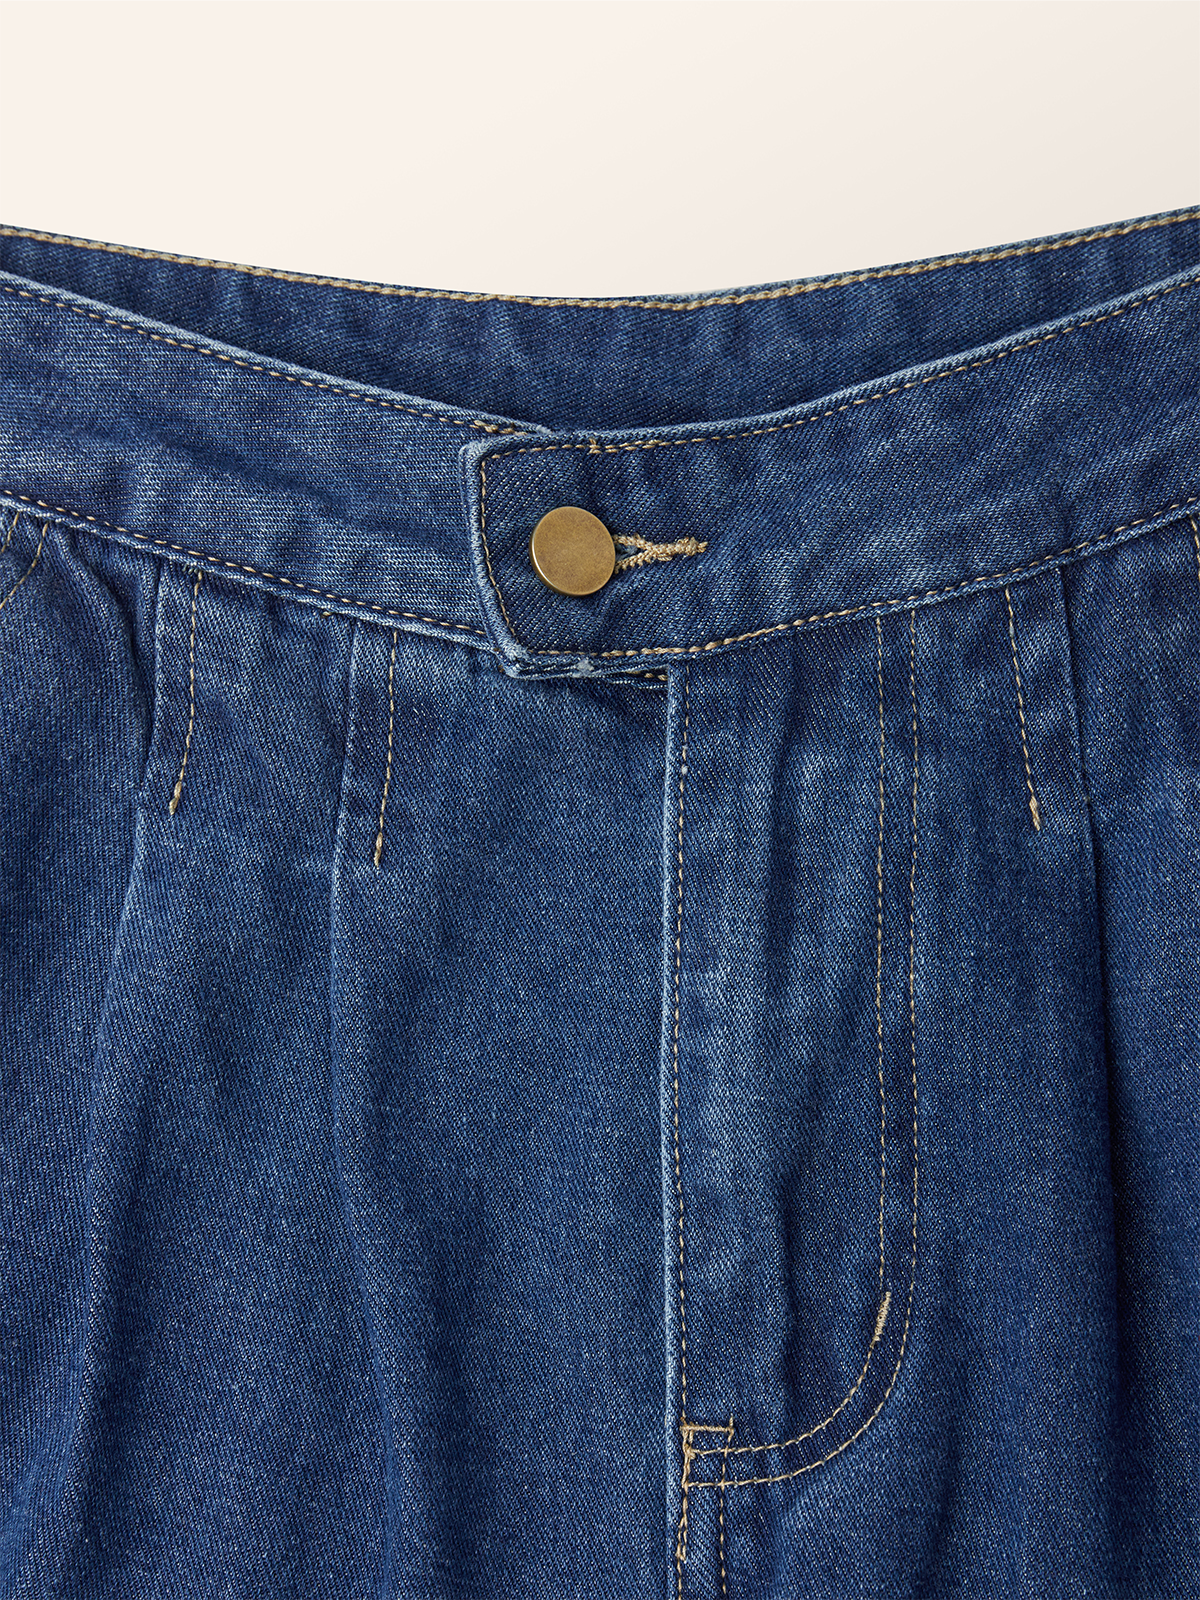 Urban Regelmäßige Passform Unifarben  Taschen Denim Jeans